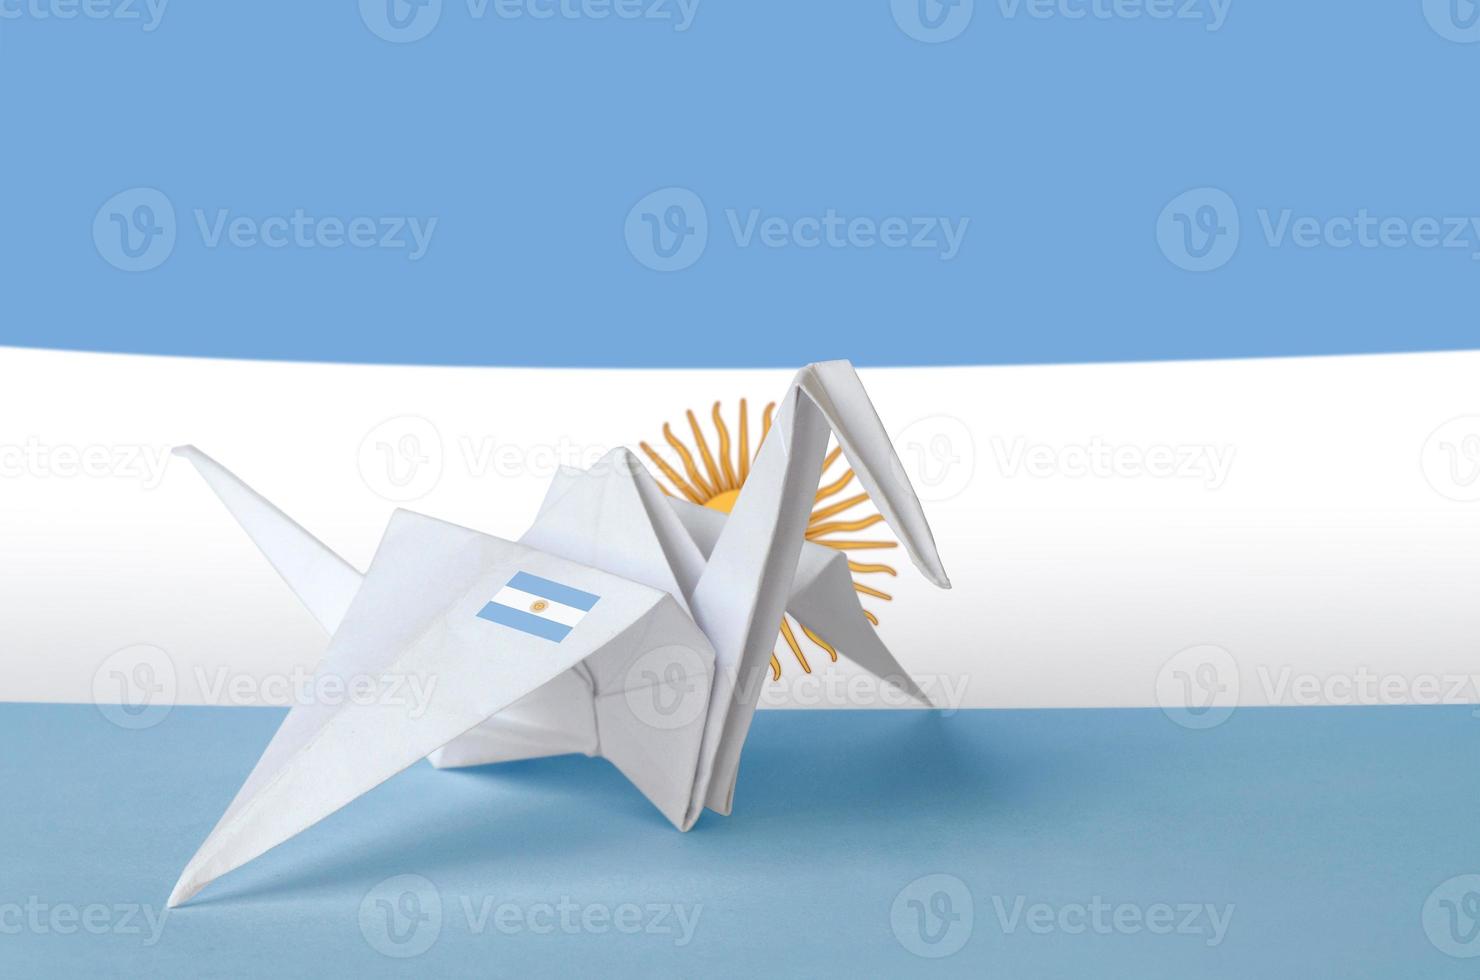 bandera argentina representada en el ala de la grúa de origami de papel. concepto de artes hechas a mano foto